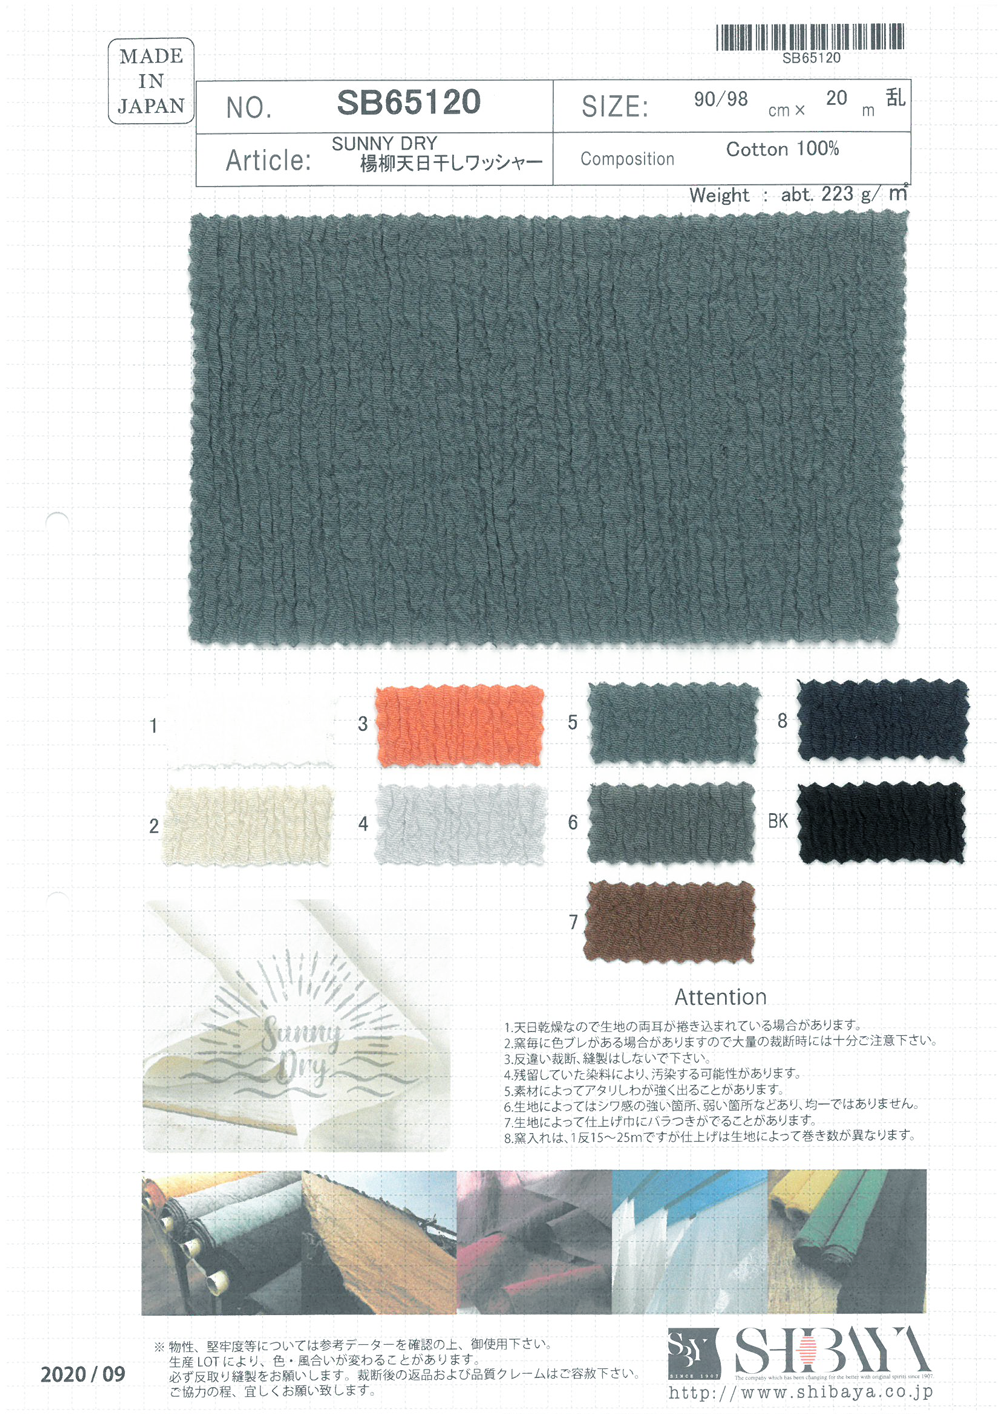 SB65120 SUNNY DRY Yoryu (Wrinkle Crepe) Processamento De Lavadora Seca Ao Sol[Têxtil / Tecido] SHIBAYA